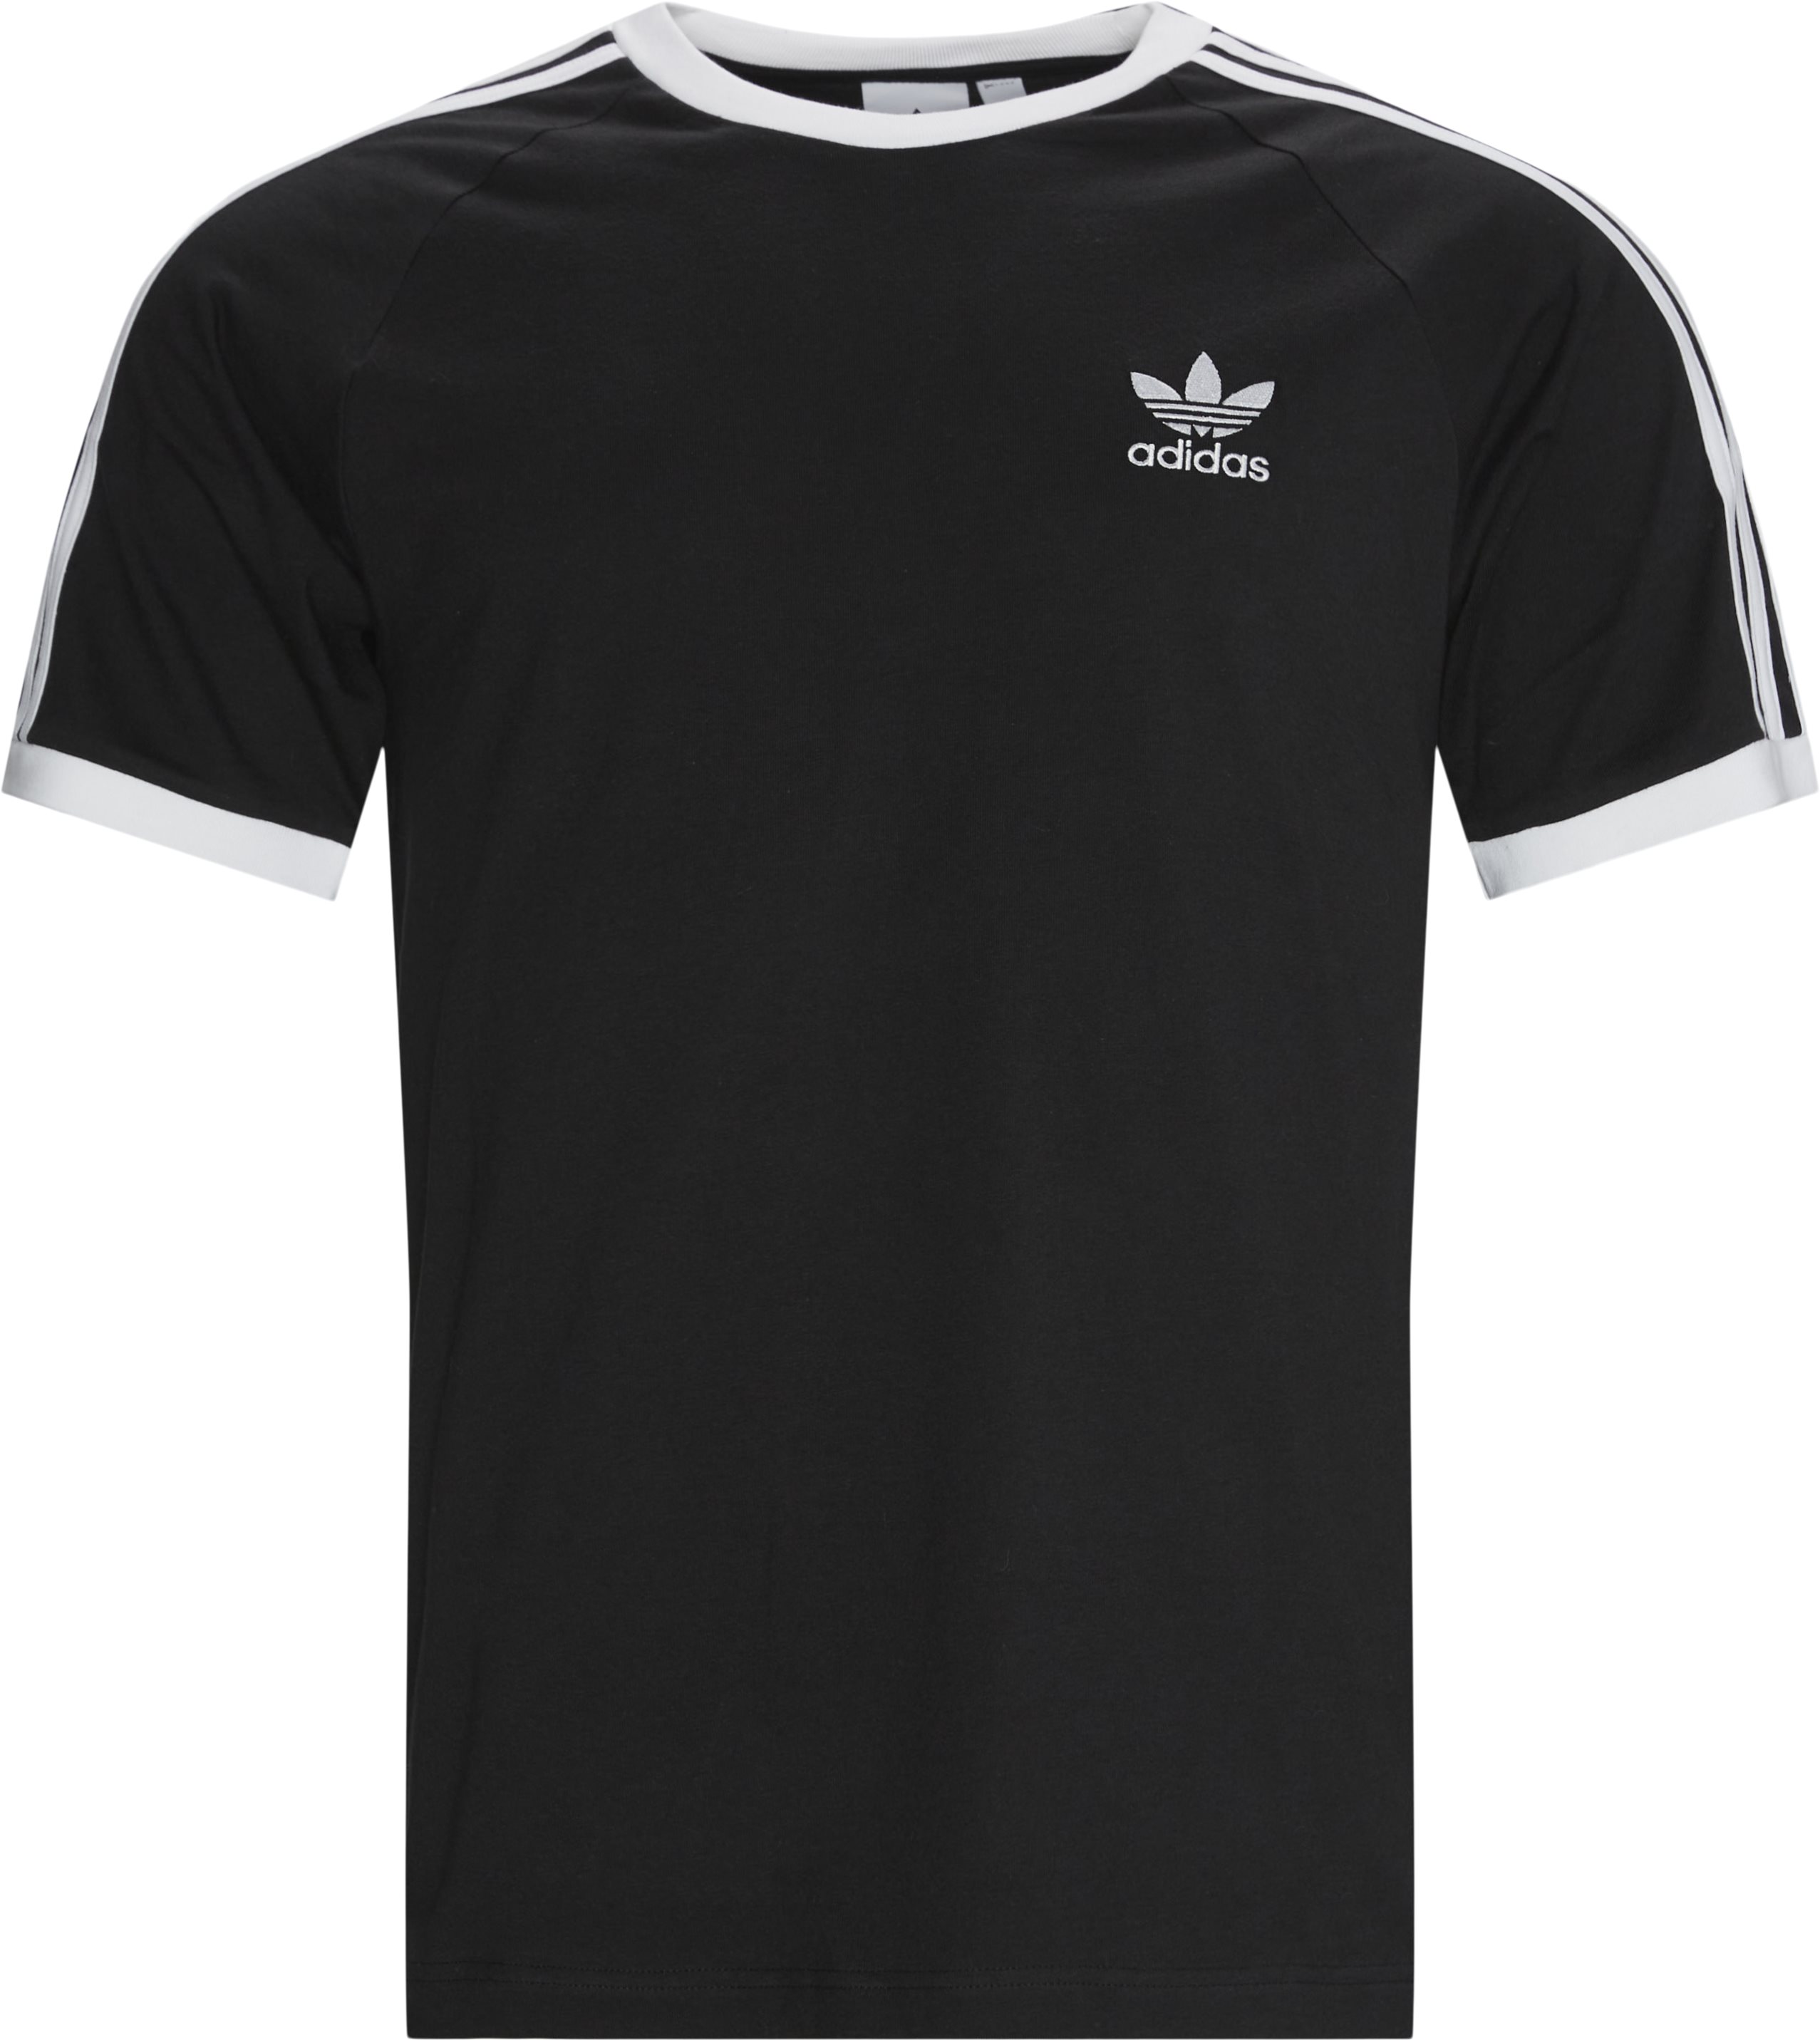 3 Stripes Tee - T-shirts - Regular fit - Black